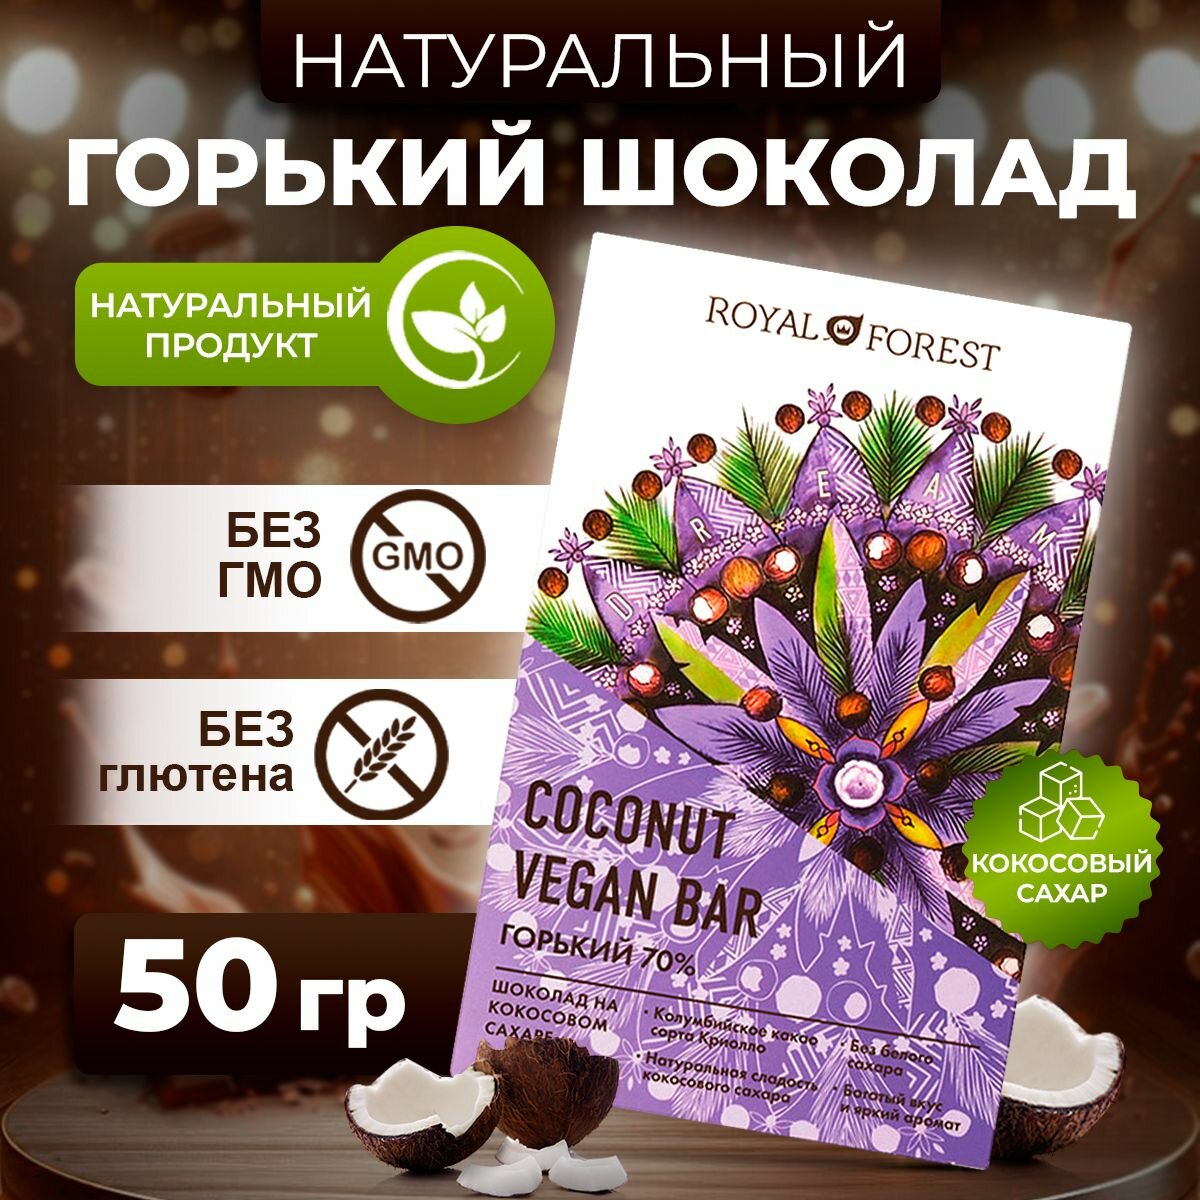 ROYAL FOREST/ Натуральный горький шоколад (70%) с кокосовым сахаром VEGAN COCONUT BAR, 50 гр.